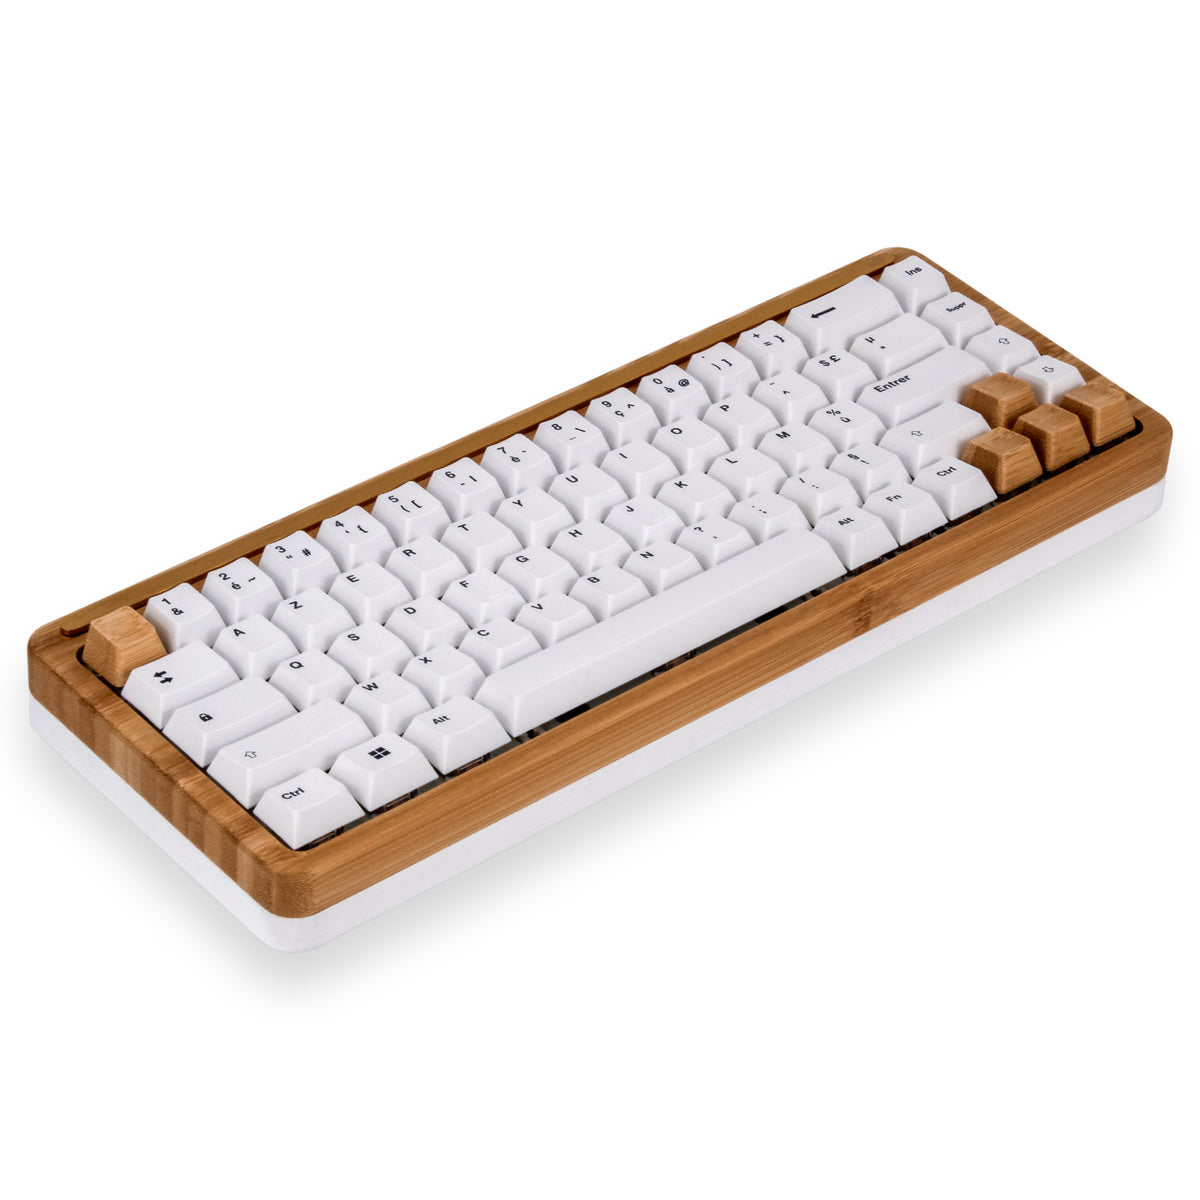 Oree ajoute le Bluetooth à ses claviers en bois - Le comptoir du